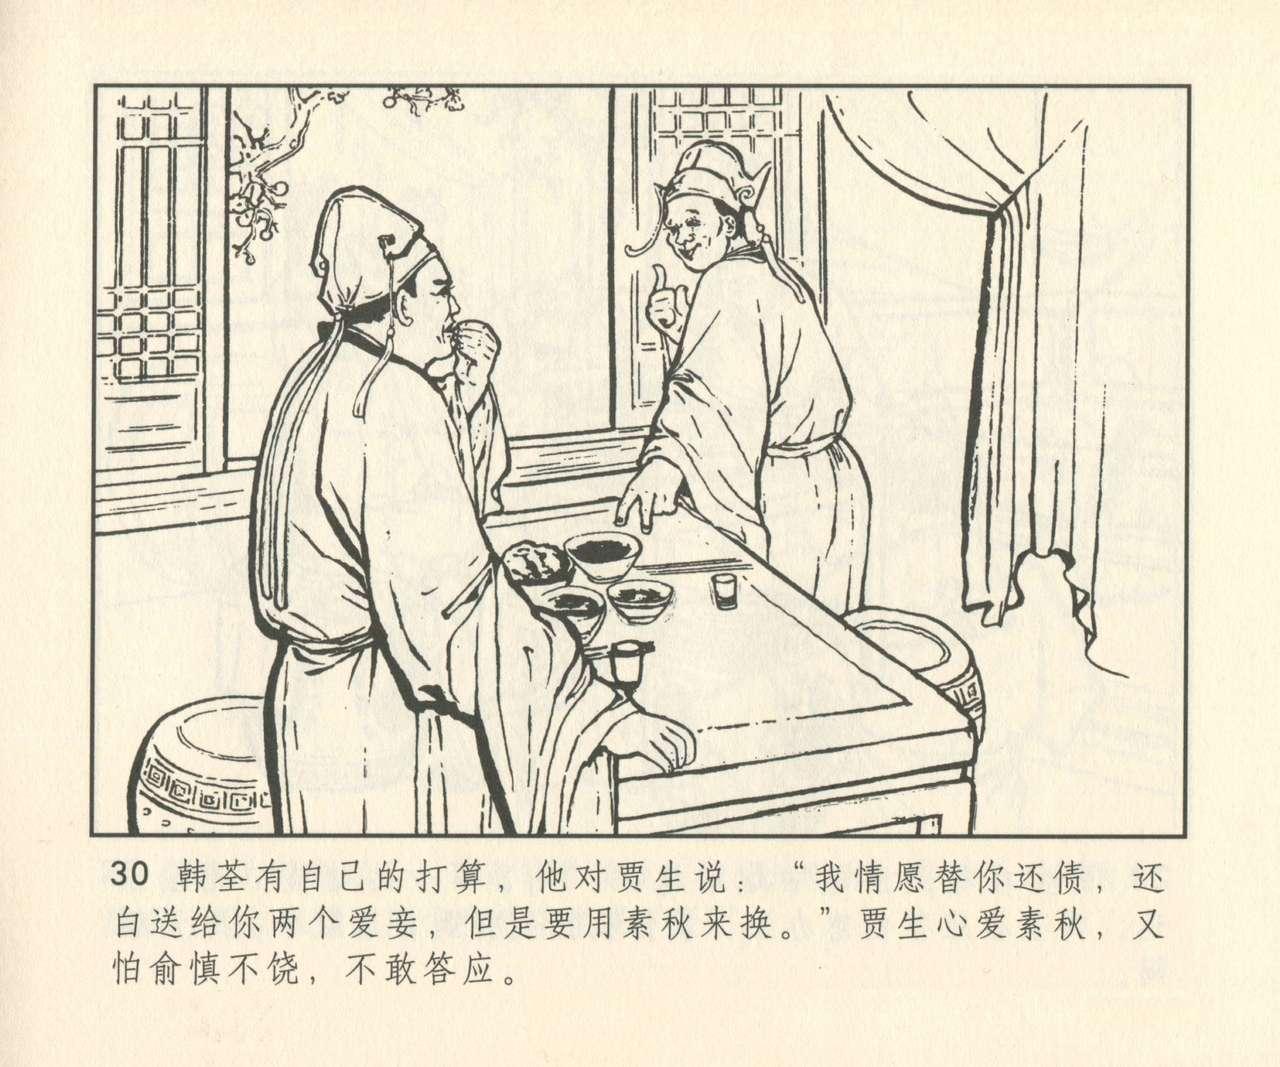 聊斋志异 张玮等绘 天津人民美术出版社 卷二十一 ~ 三十 310